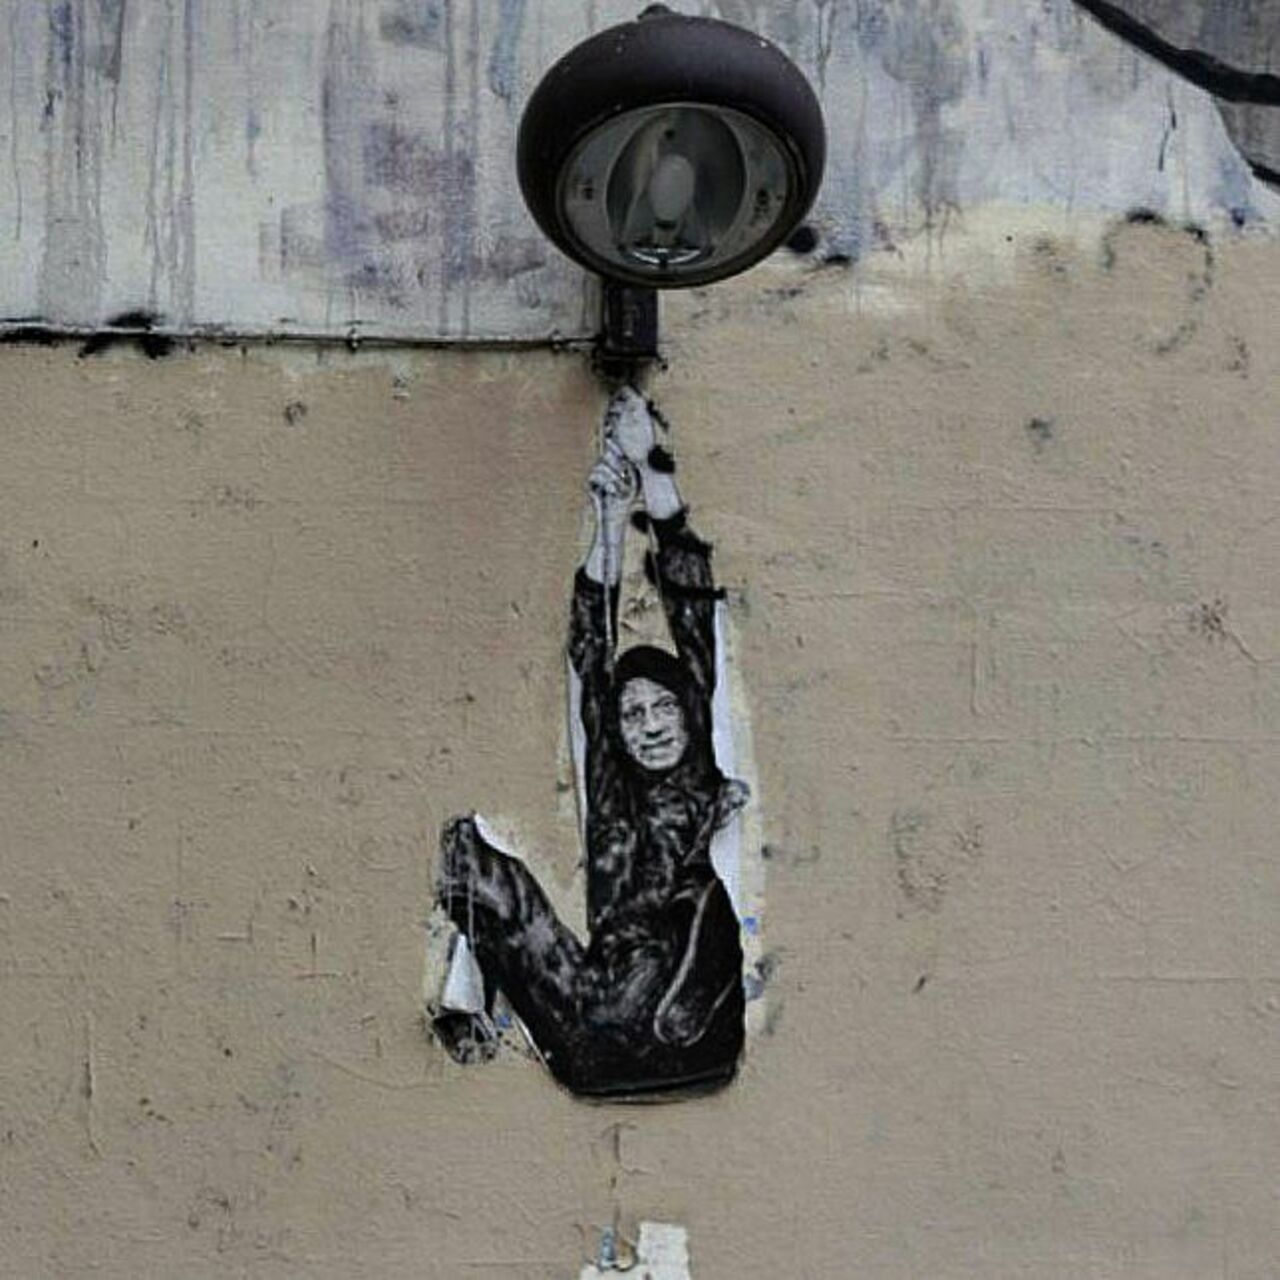 #Paris #graffiti photo by @jpoesse http://ift.tt/1Lu4sP2 #StreetArt https://t.co/IUYYszmkZe